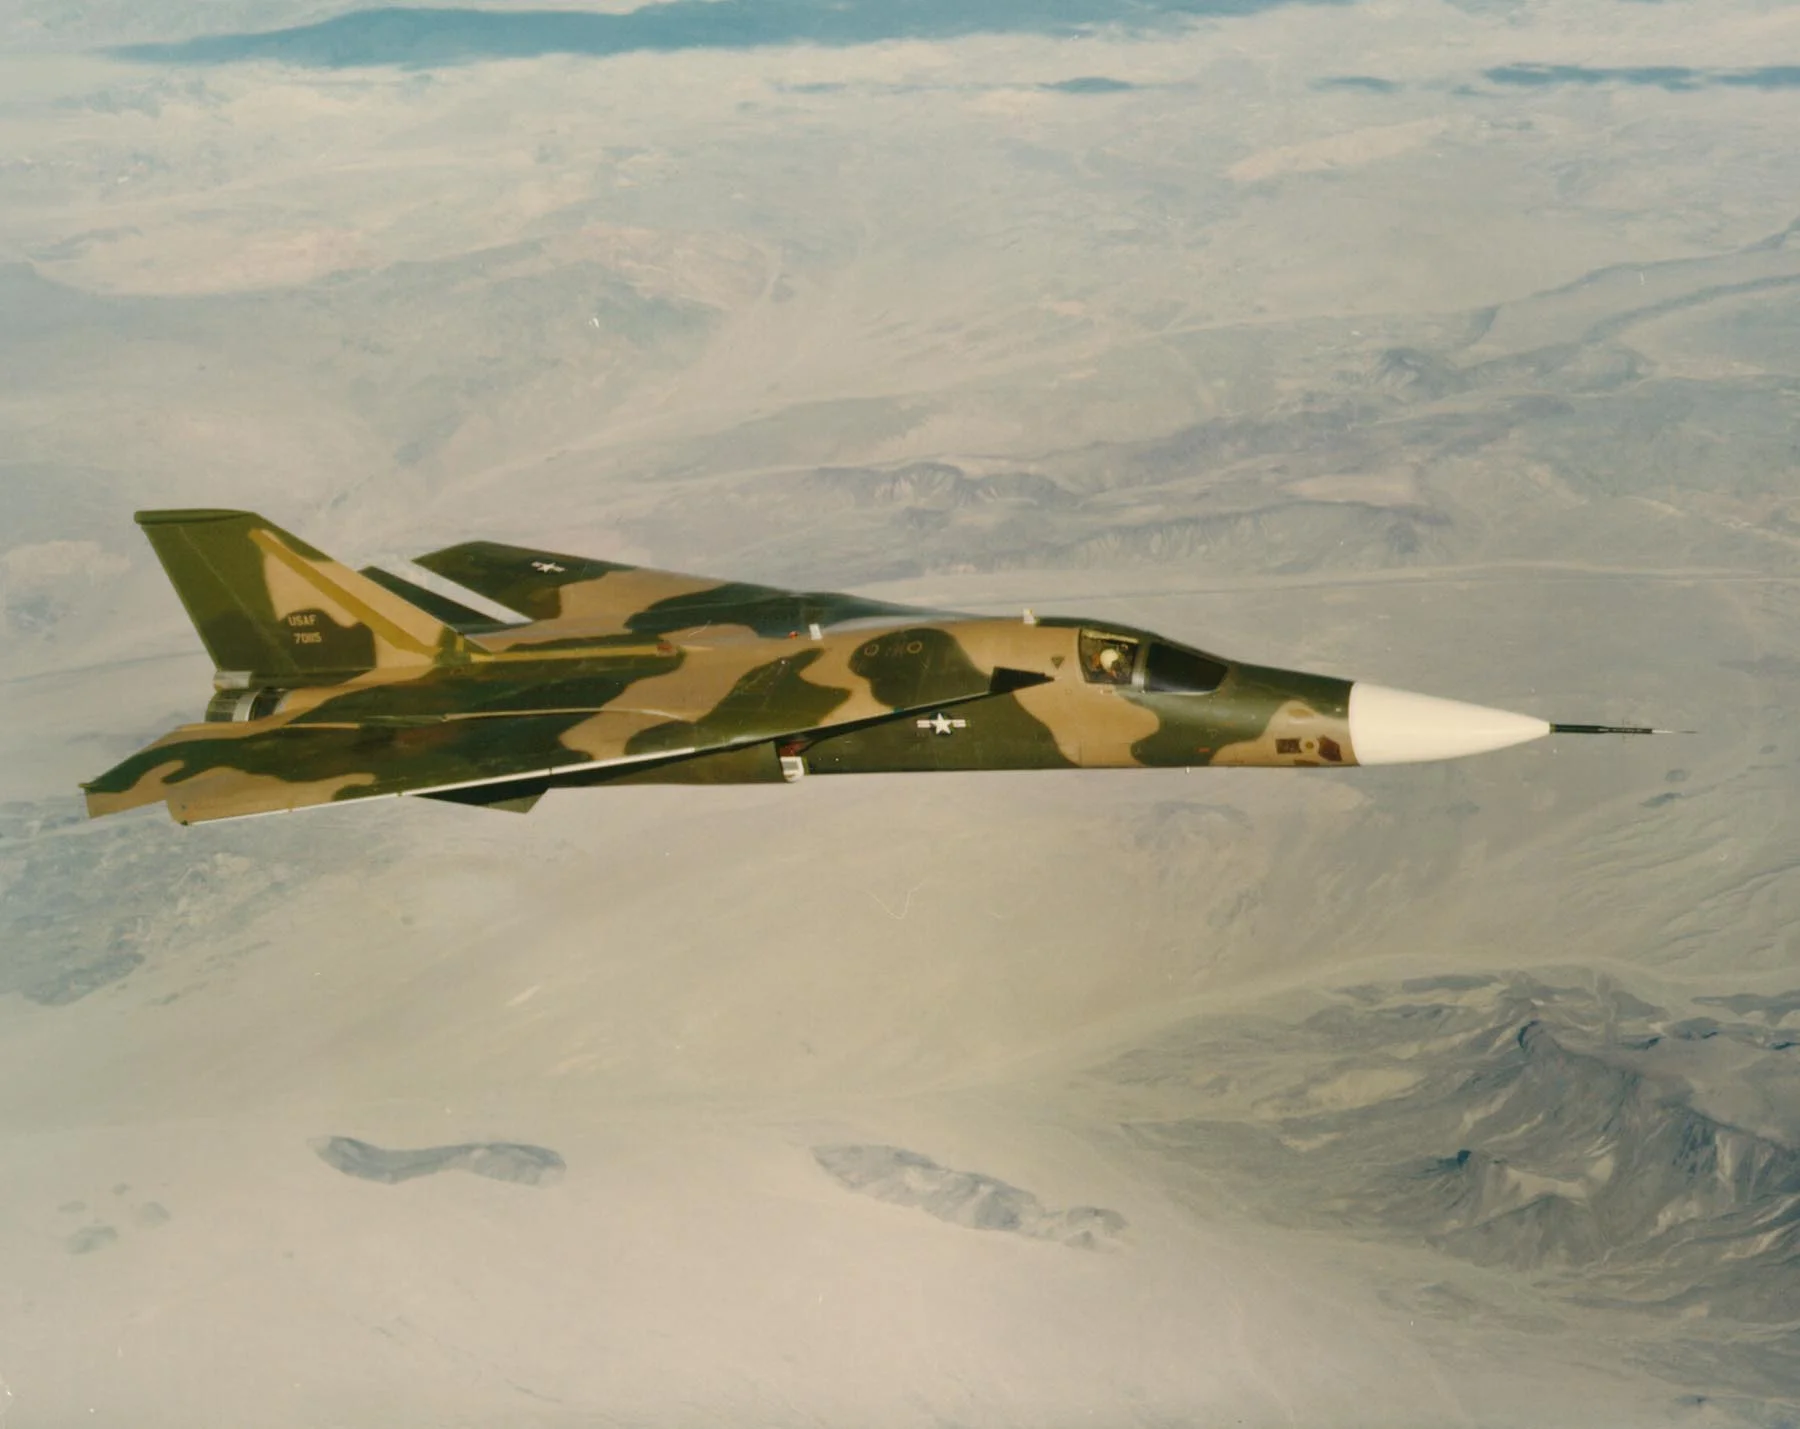 The General Dynamics F-111 Aardvark.